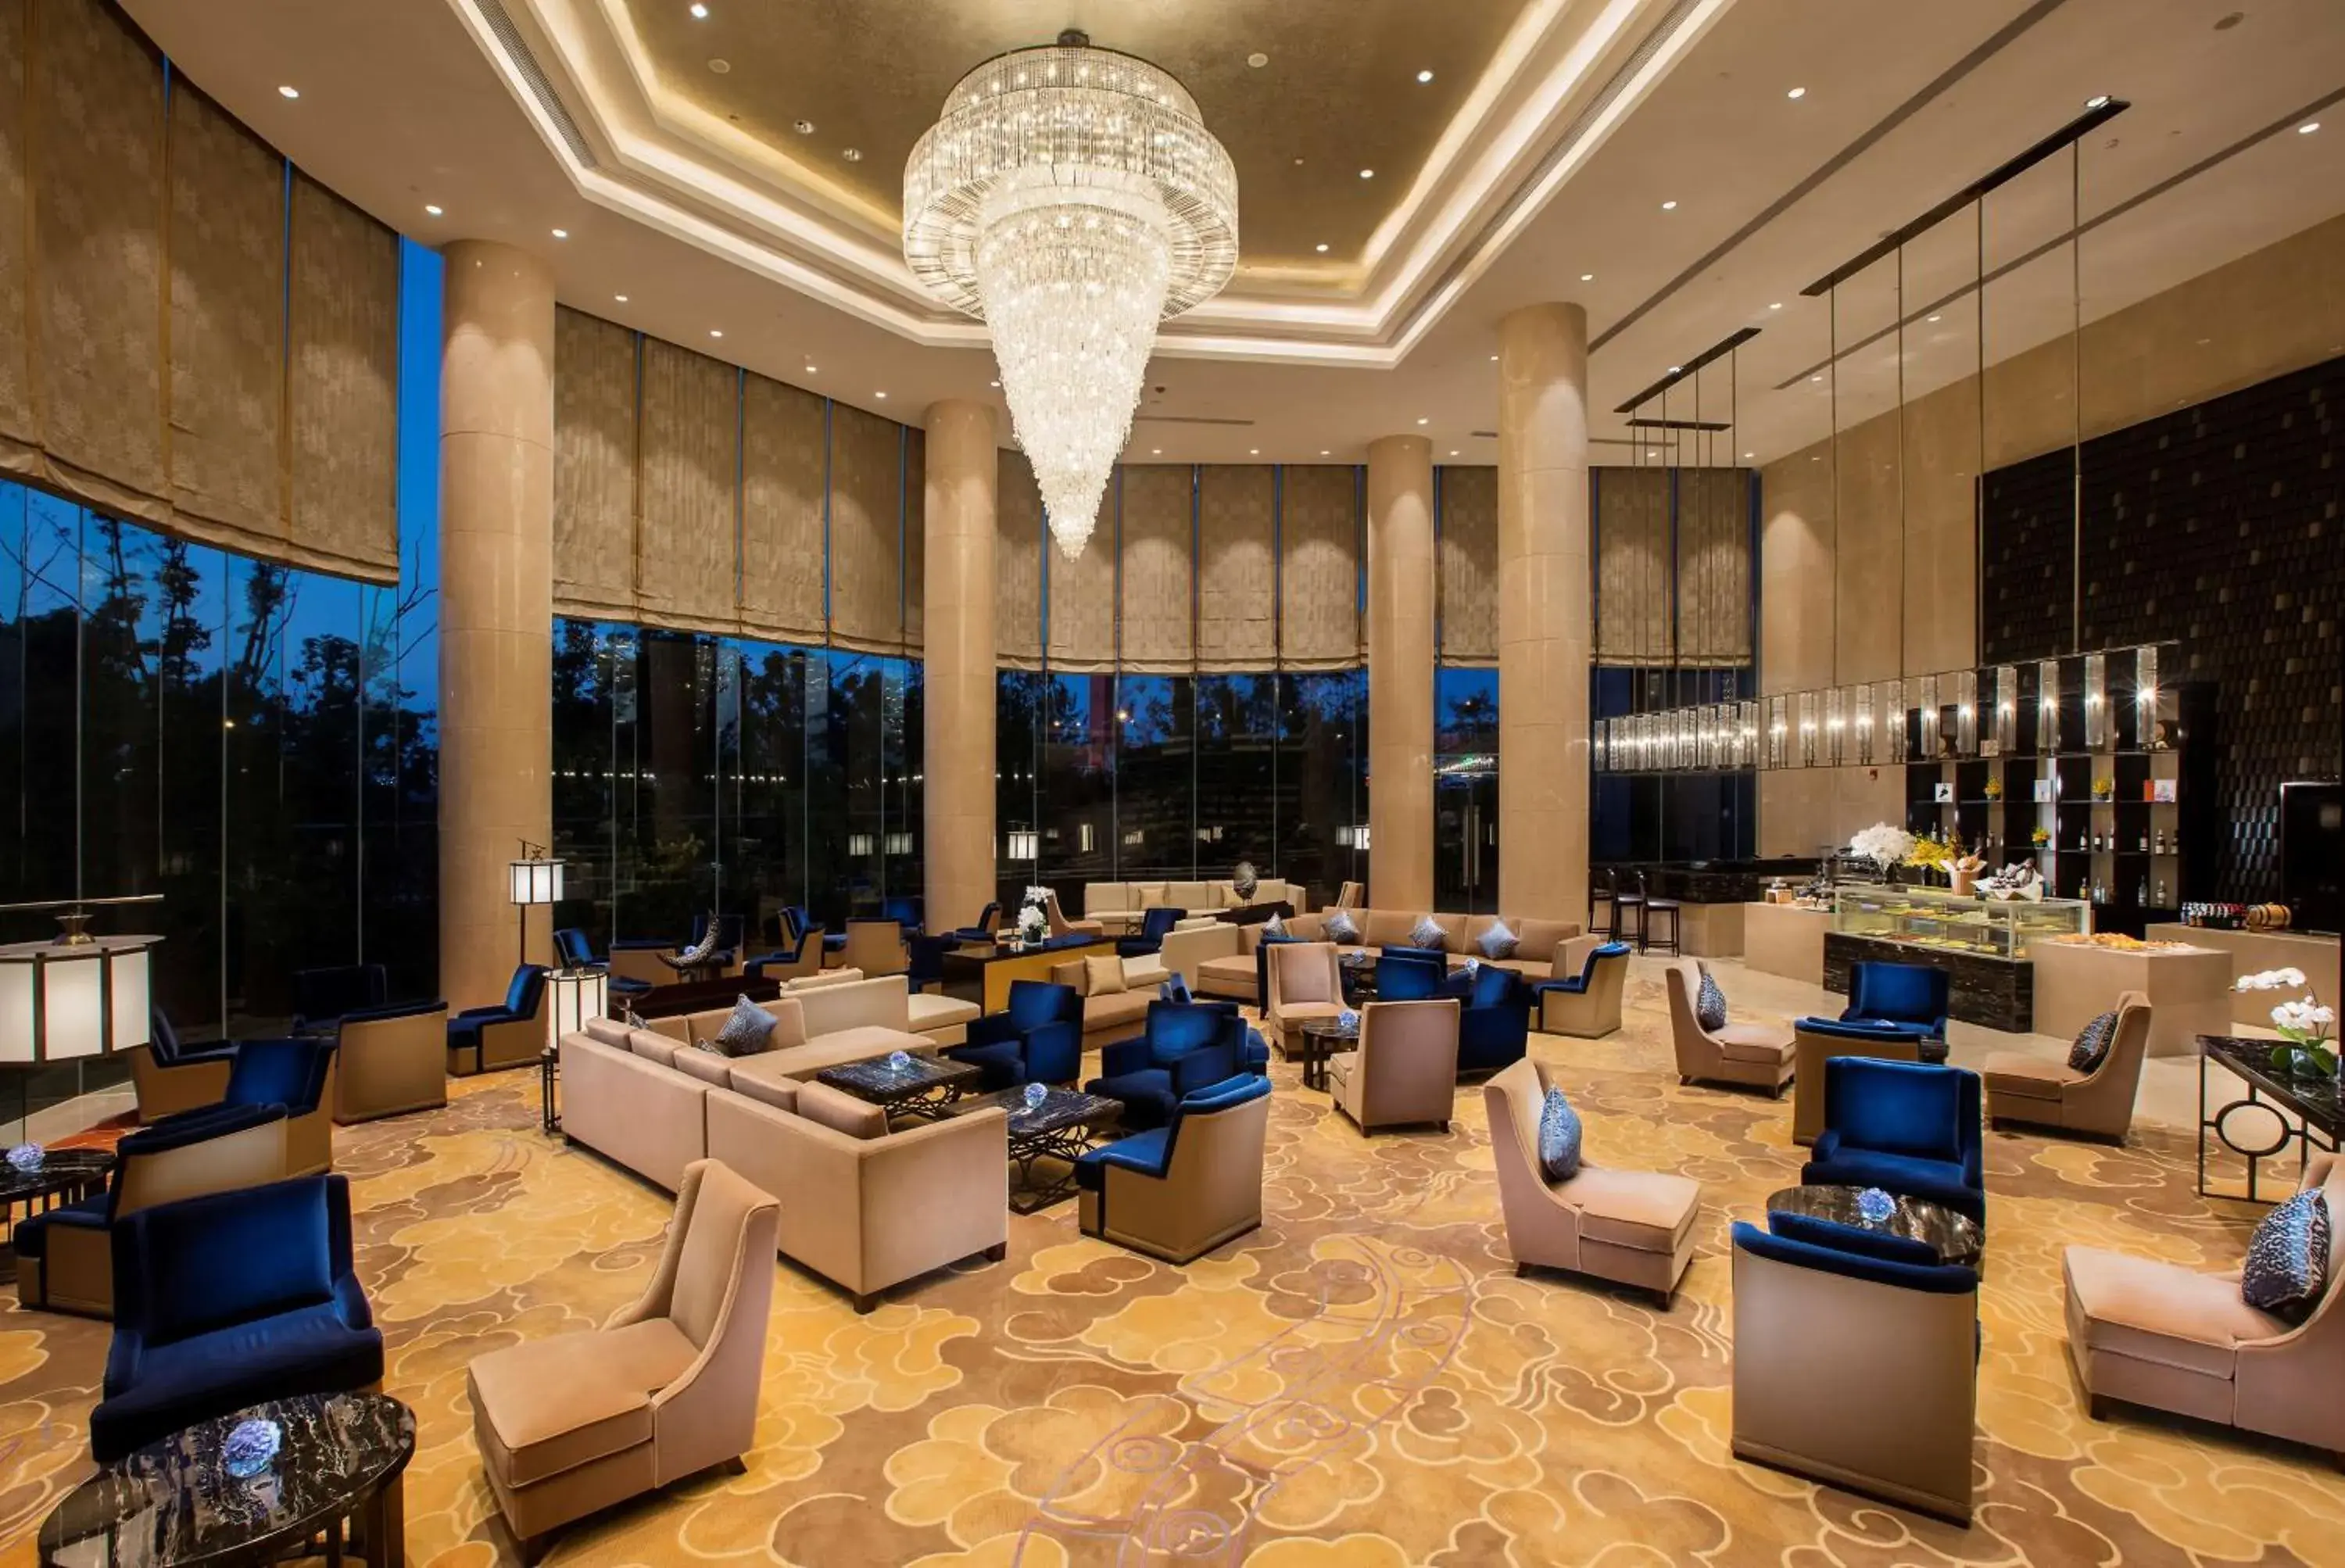 Lobby or reception in Hilton Wuhan Riverside